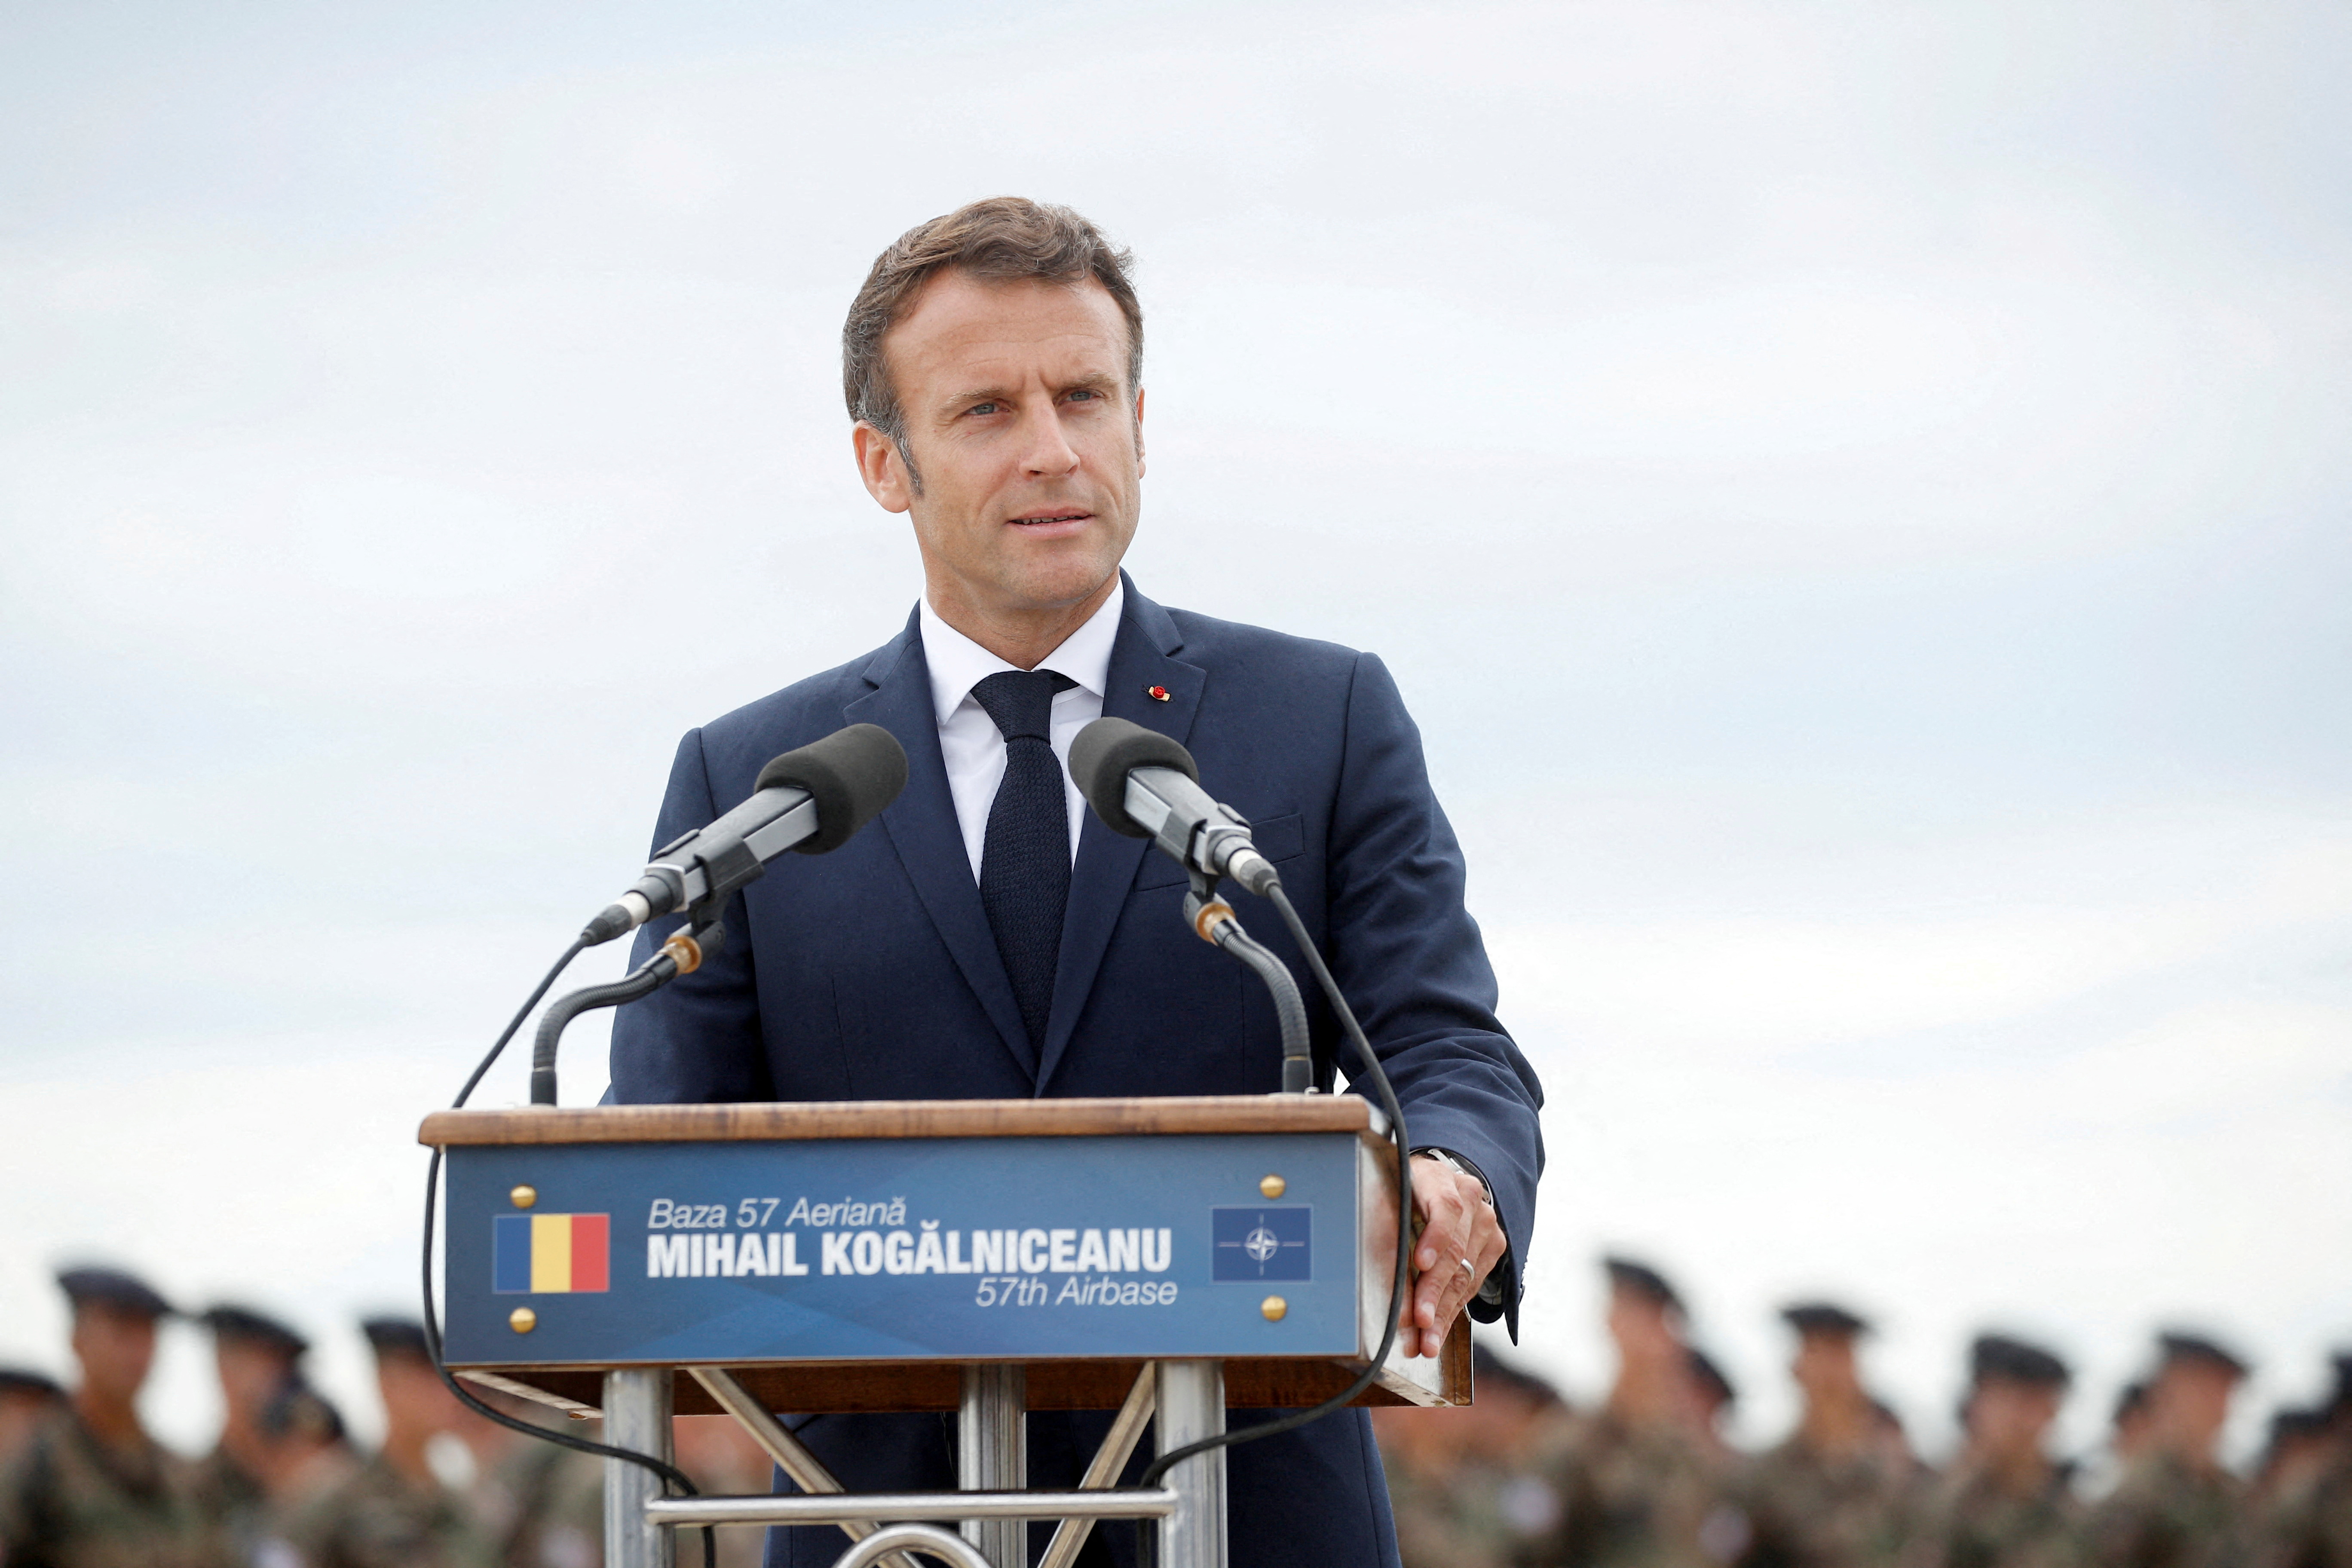 FOTO DE ARCHIVO: El presidente francés, Emmanuel Macron, hace una declaración mientras visita a las fuerzas de la OTAN en la base aérea Mihail Kogalniceanu, cerca de la ciudad de Constanza, Rumanía, 15 de junio de 2022. Yoan Valat/Pool vía REUTERS